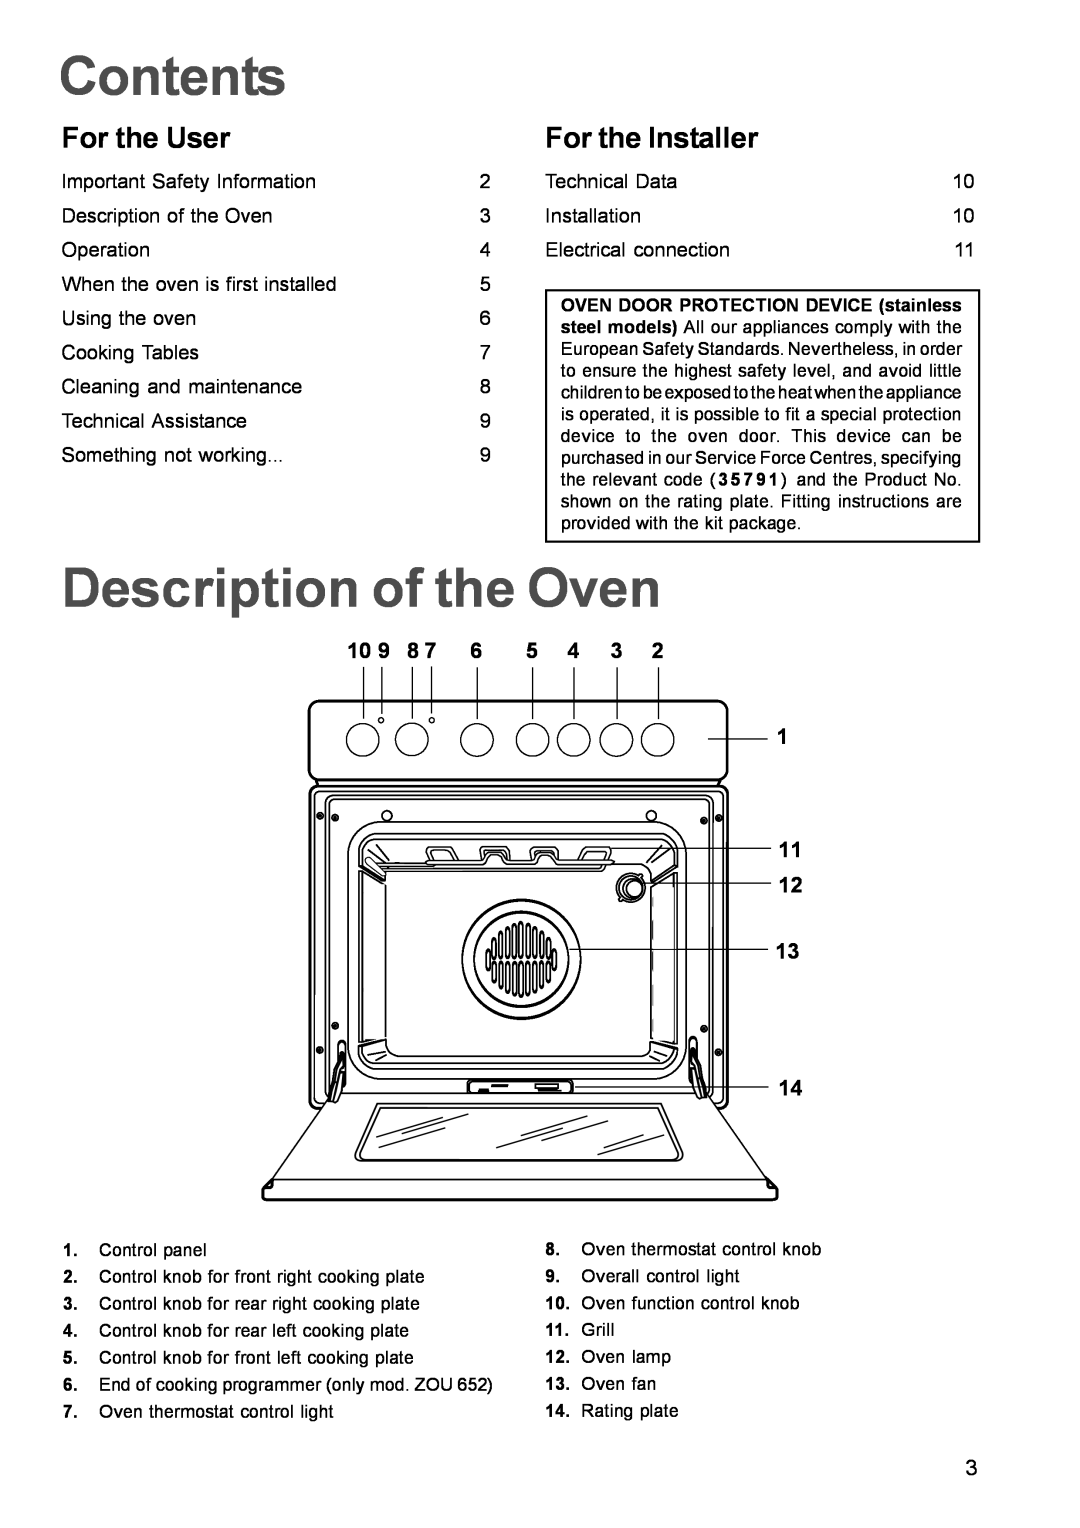 Zanussi ZOU 342, ZOU 652, ZOU 661 manual Contents, Description of the Oven, For the User, For the Installer 